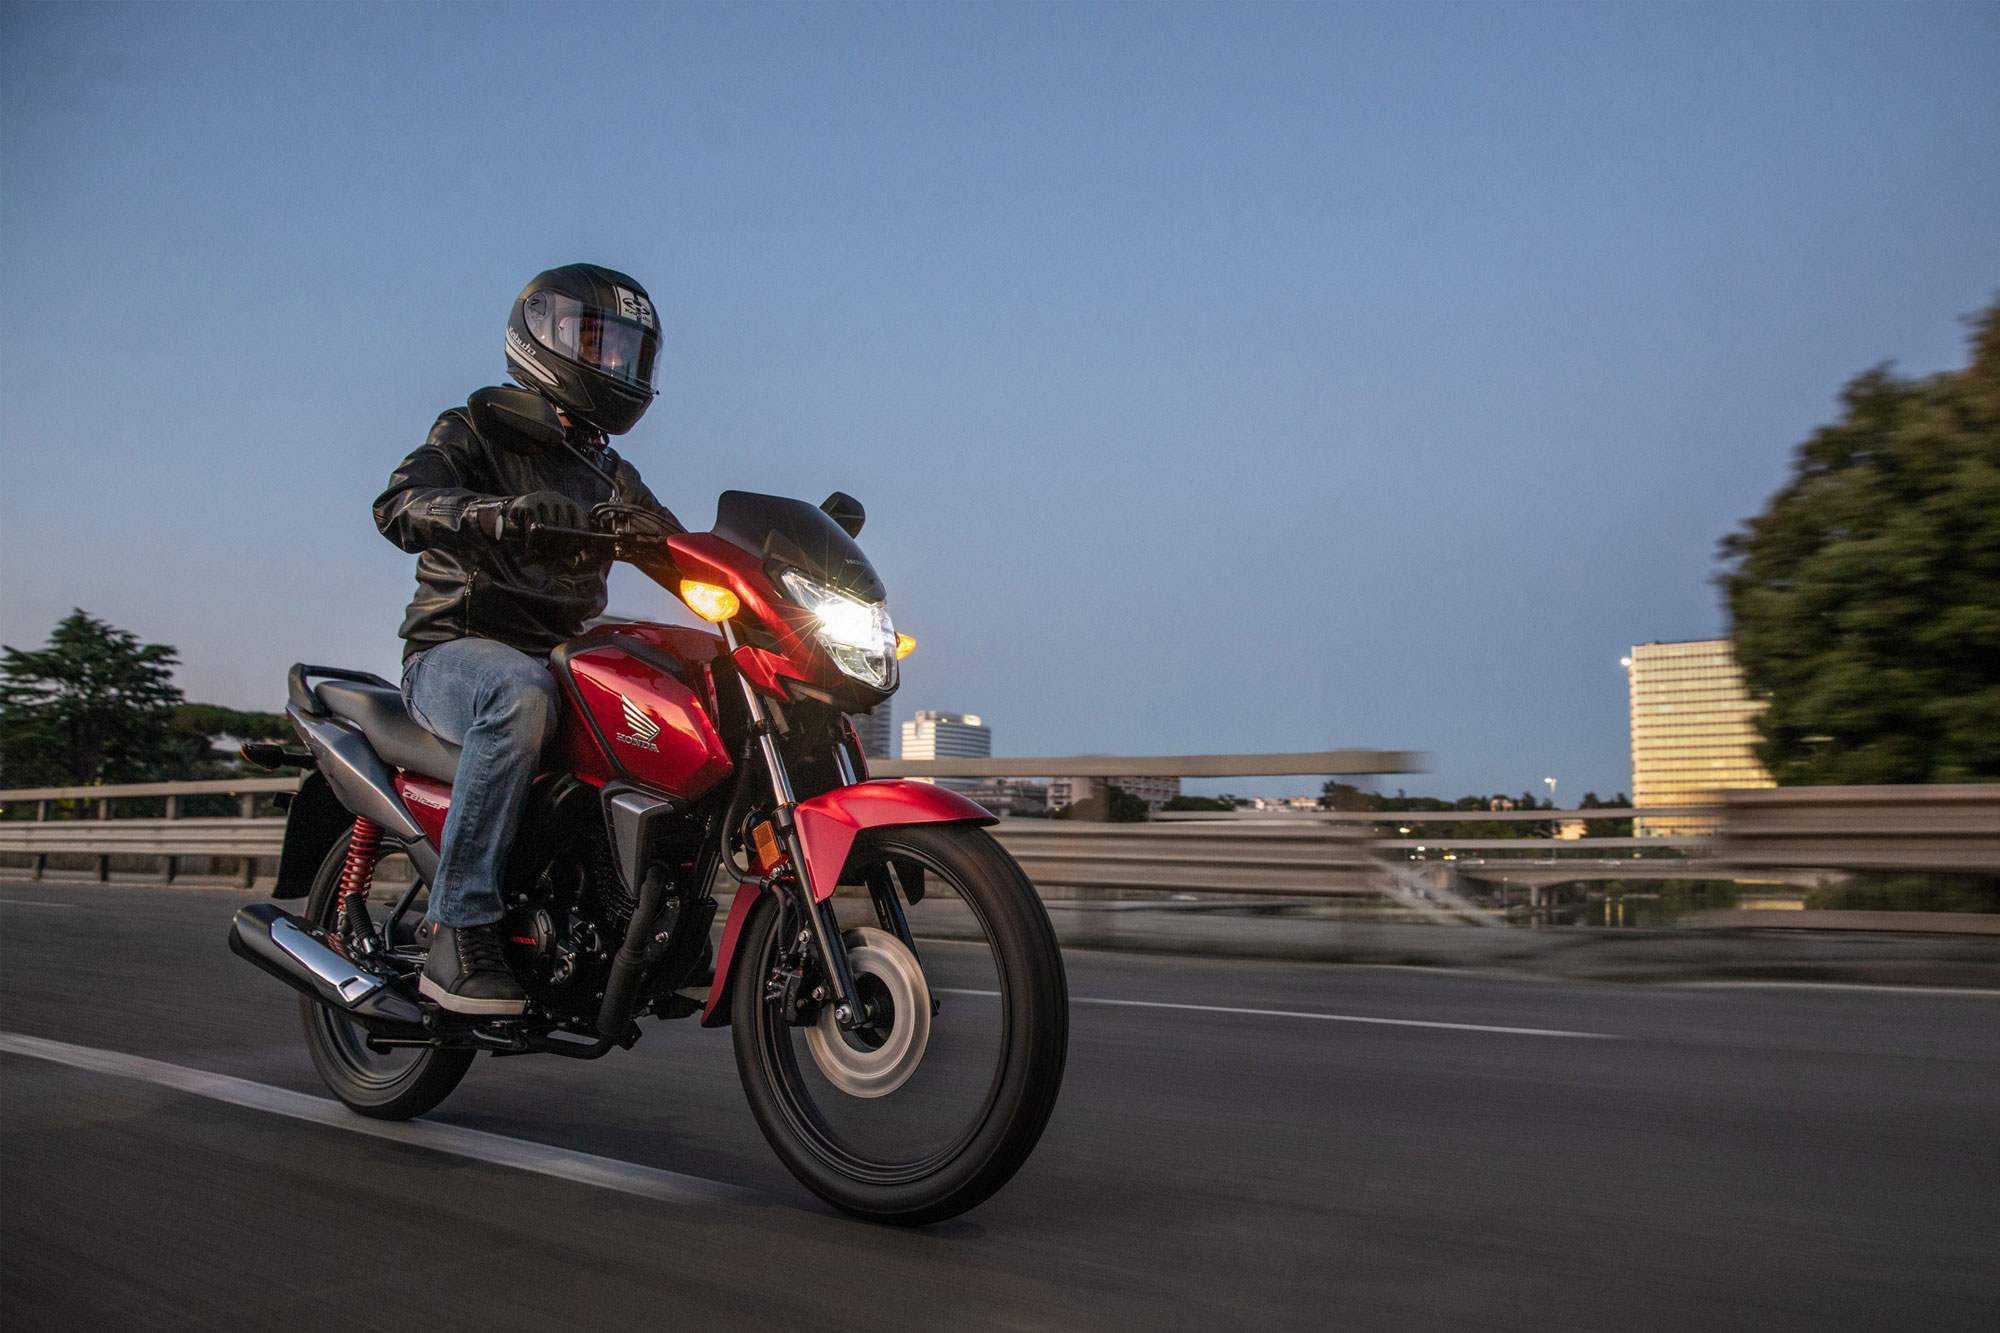 Η νέα Honda CB125F 21ΜΥ έρχεται τον Ιανουάριο 2021 στην Ελλάδα